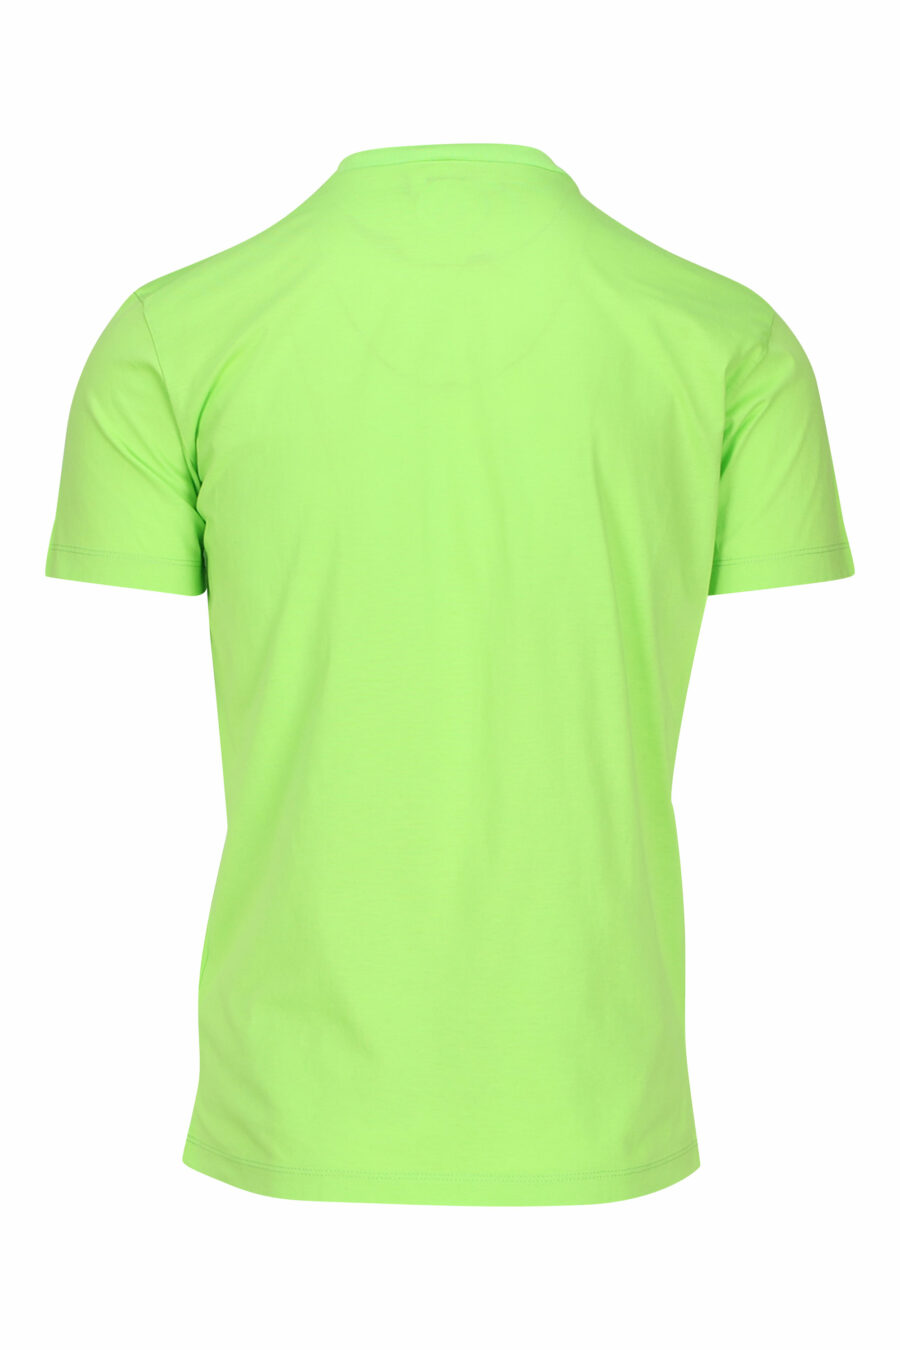 Camiseta verde lima con maxilogo "icon" negro - 8054148035594 1